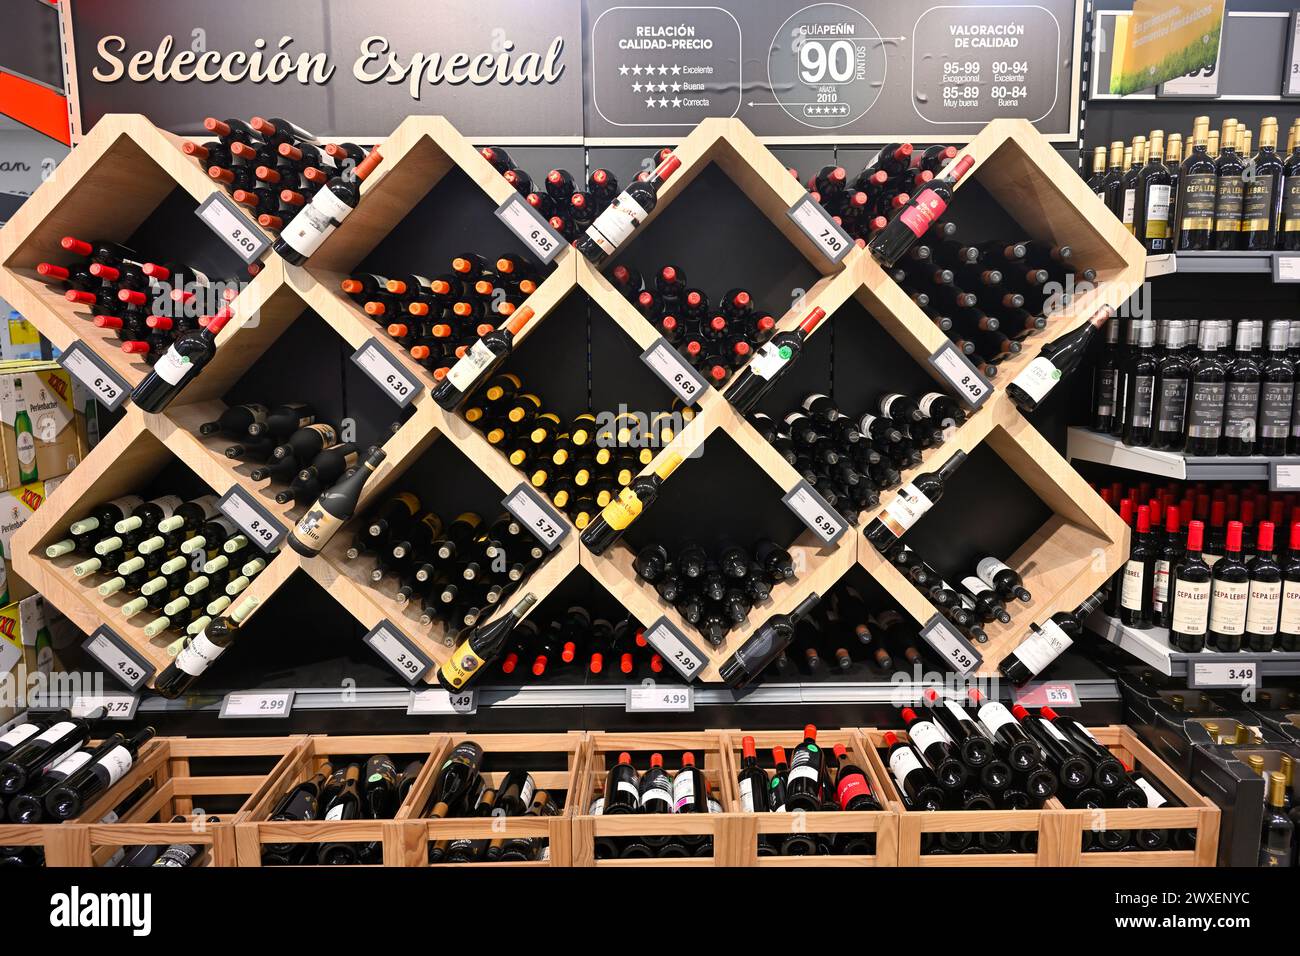 Shelves, display racks, full of wine bottles in Lidl supermarket, Spain Stock Photo